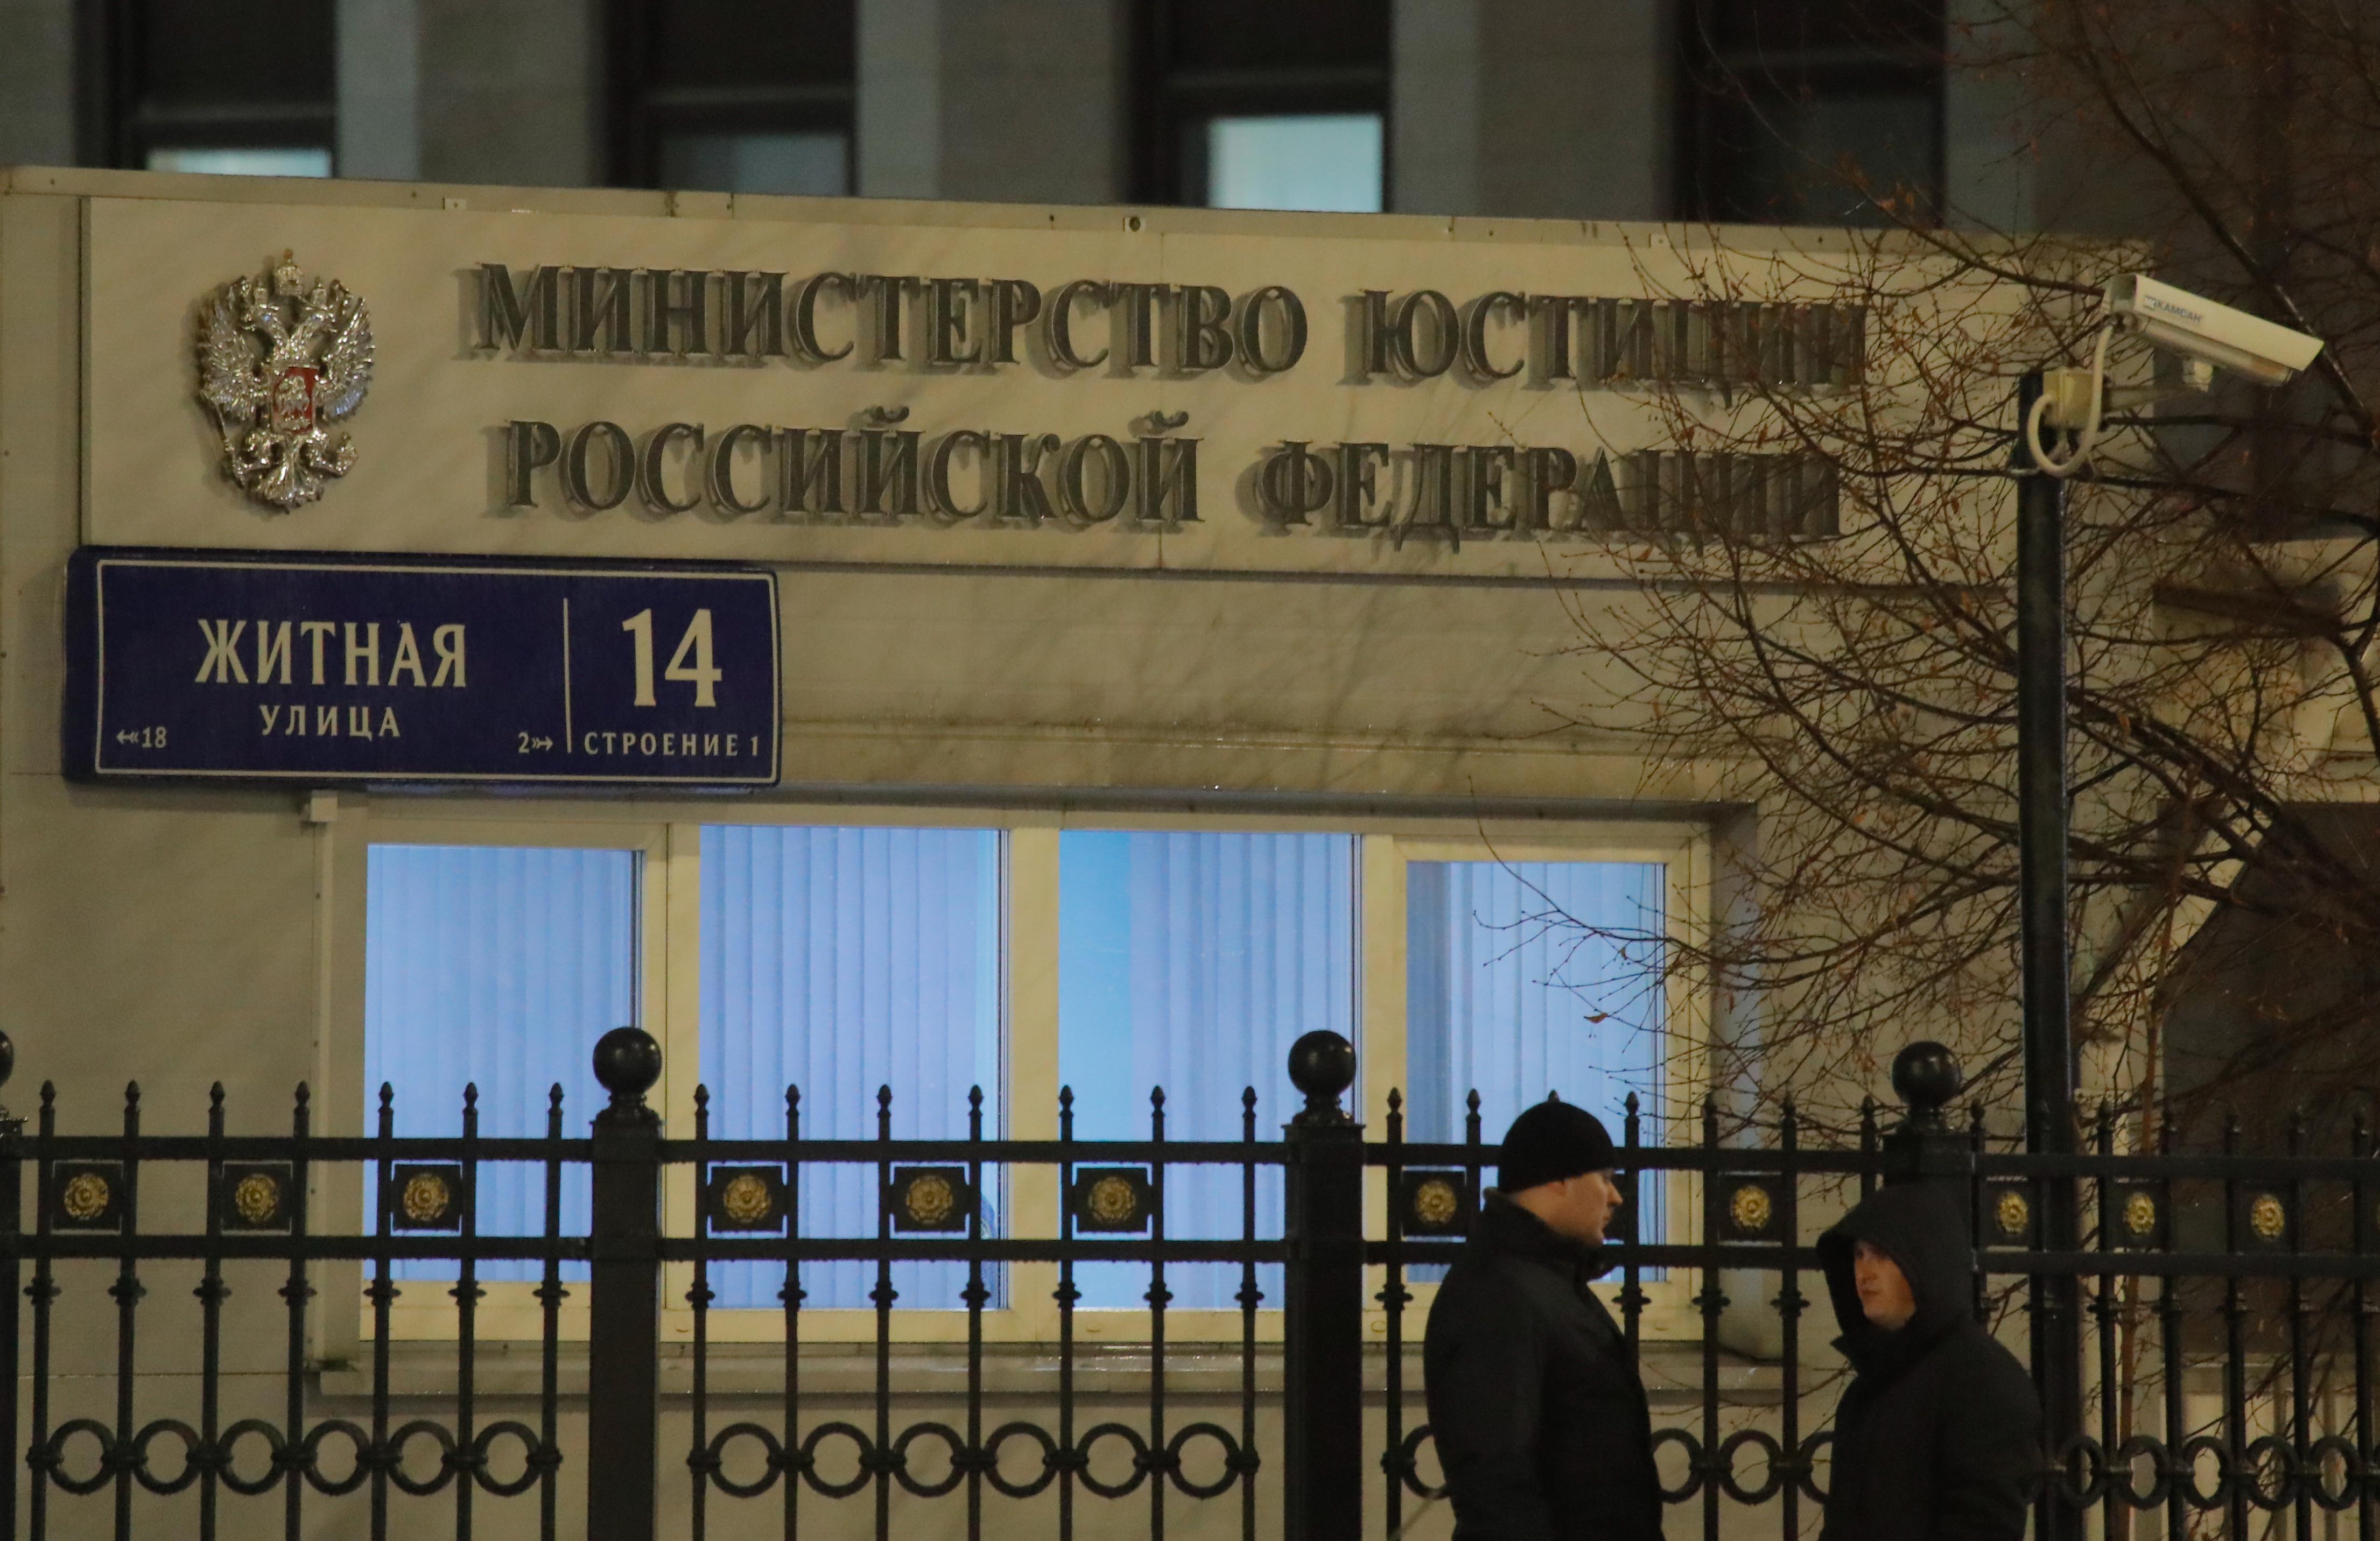 Здание Министерства юстиции РФ, Москва, декабрь 2017 года.